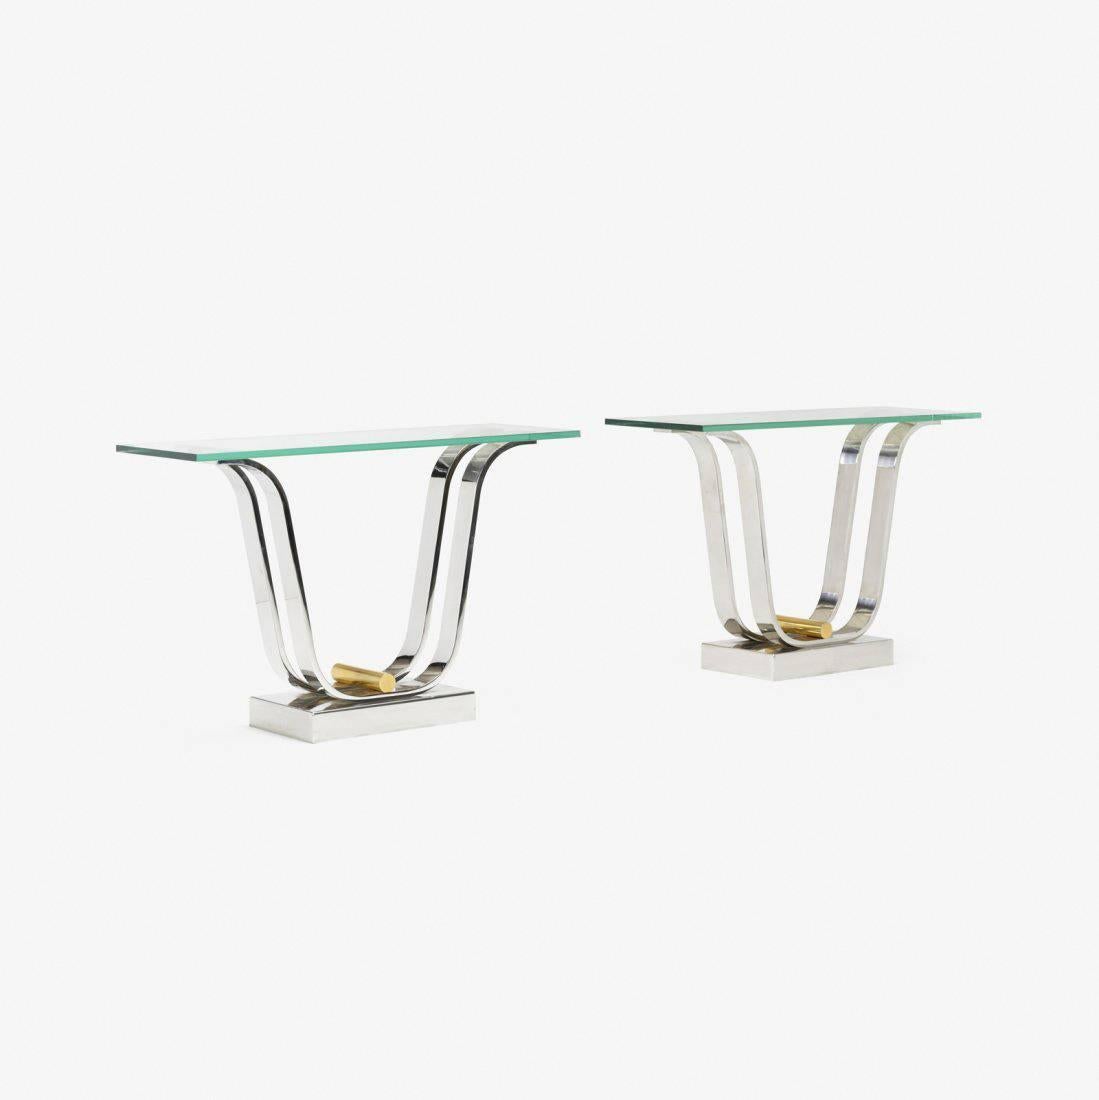 Paire de bases de table en tulipe authentifiées, conçues et fabriquées par Karl Springer, Ltd. Les bases sont actuellement configurées comme une paire de tables de console avec des plateaux en verre, mais elles peuvent également être utilisées comme